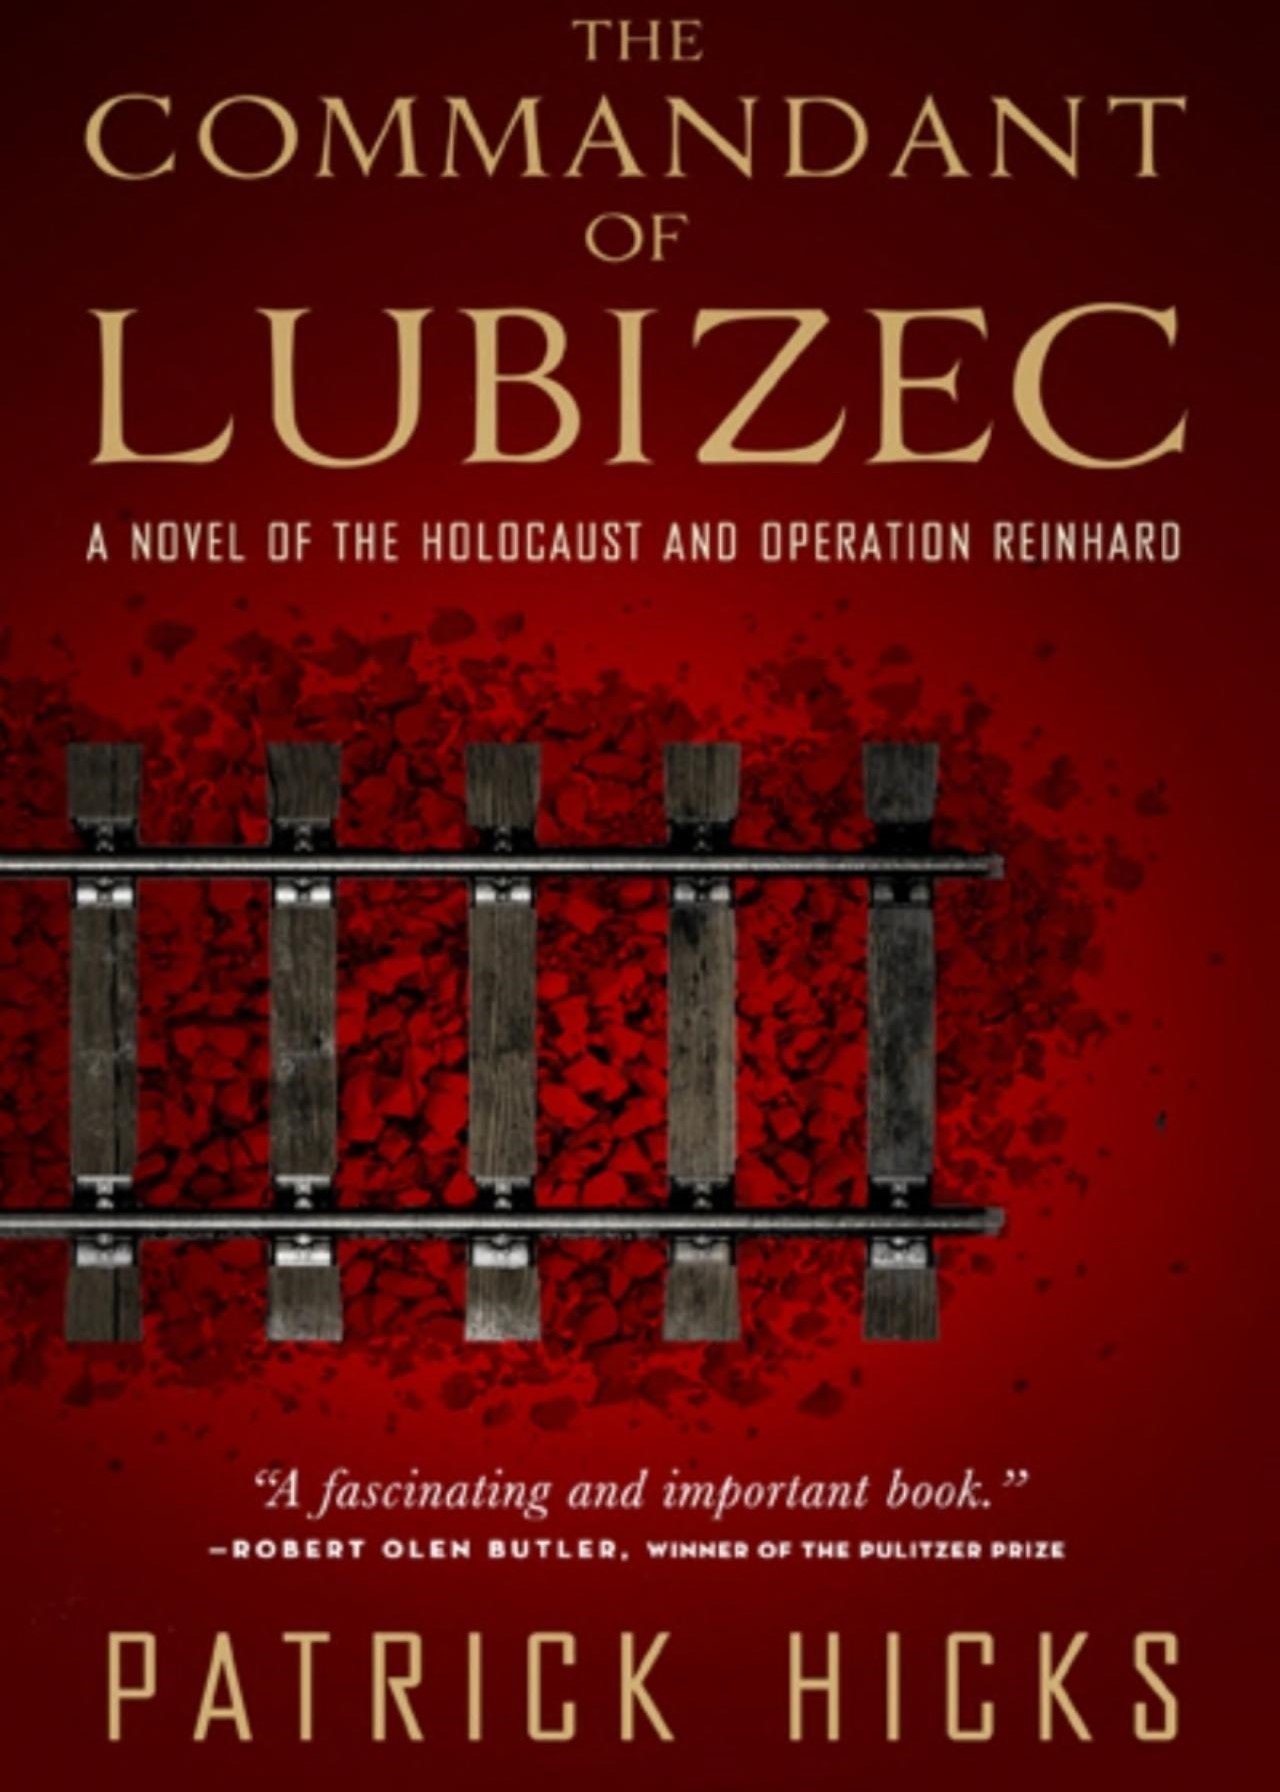 the commandant of lubizec